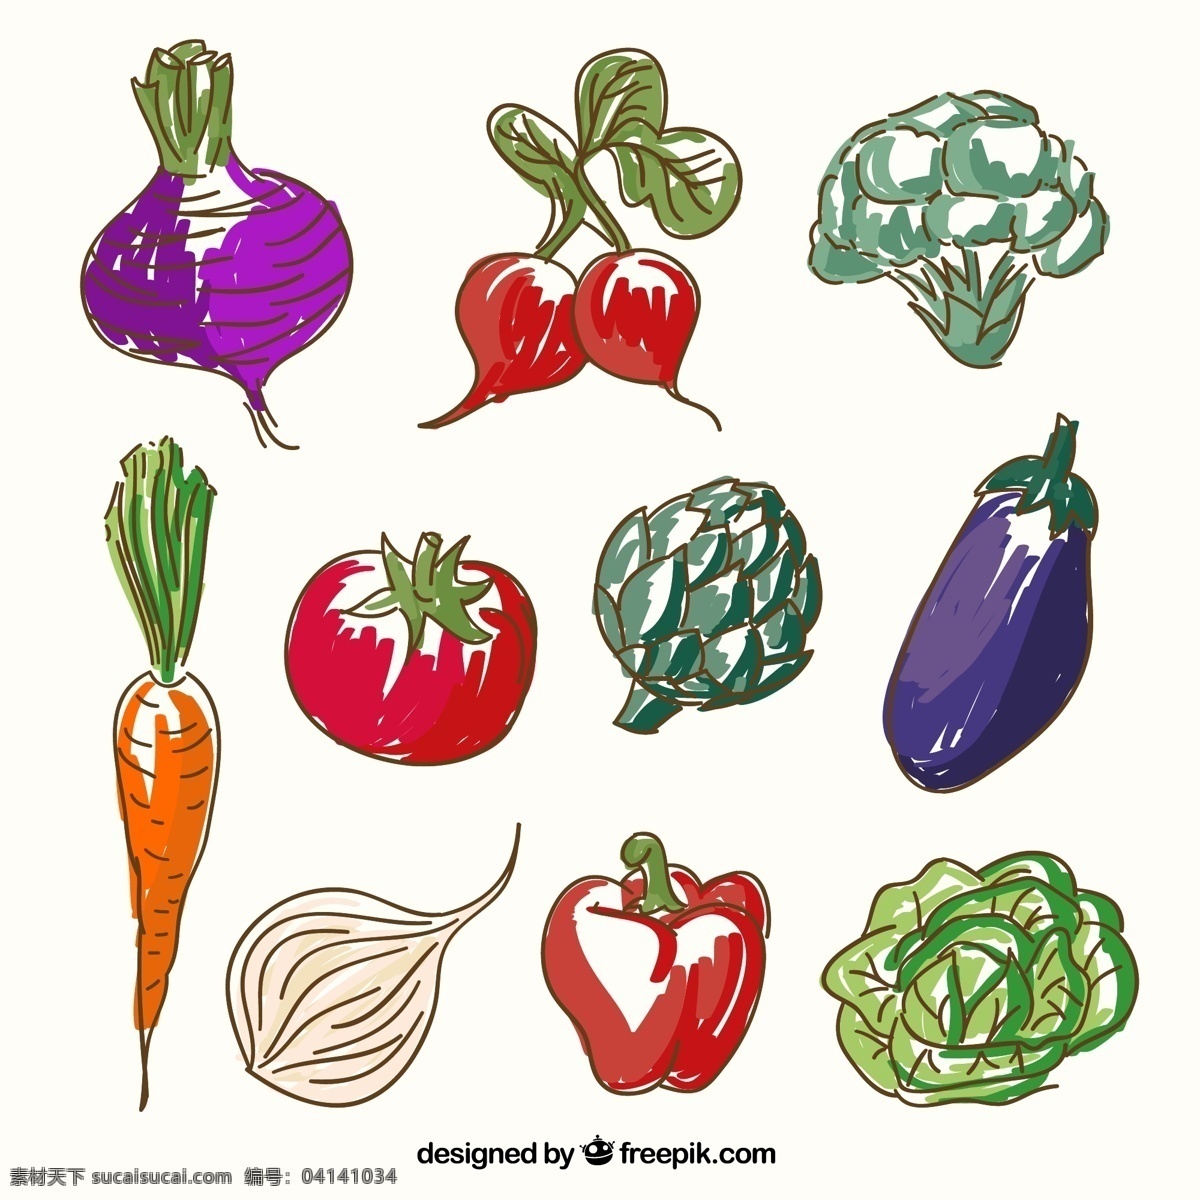 彩绘蔬菜 茄子 萝卜 花椰菜 西红柿 胡萝卜 甜菜 柿子椒 大蒜 莴苣 蔬菜 白色